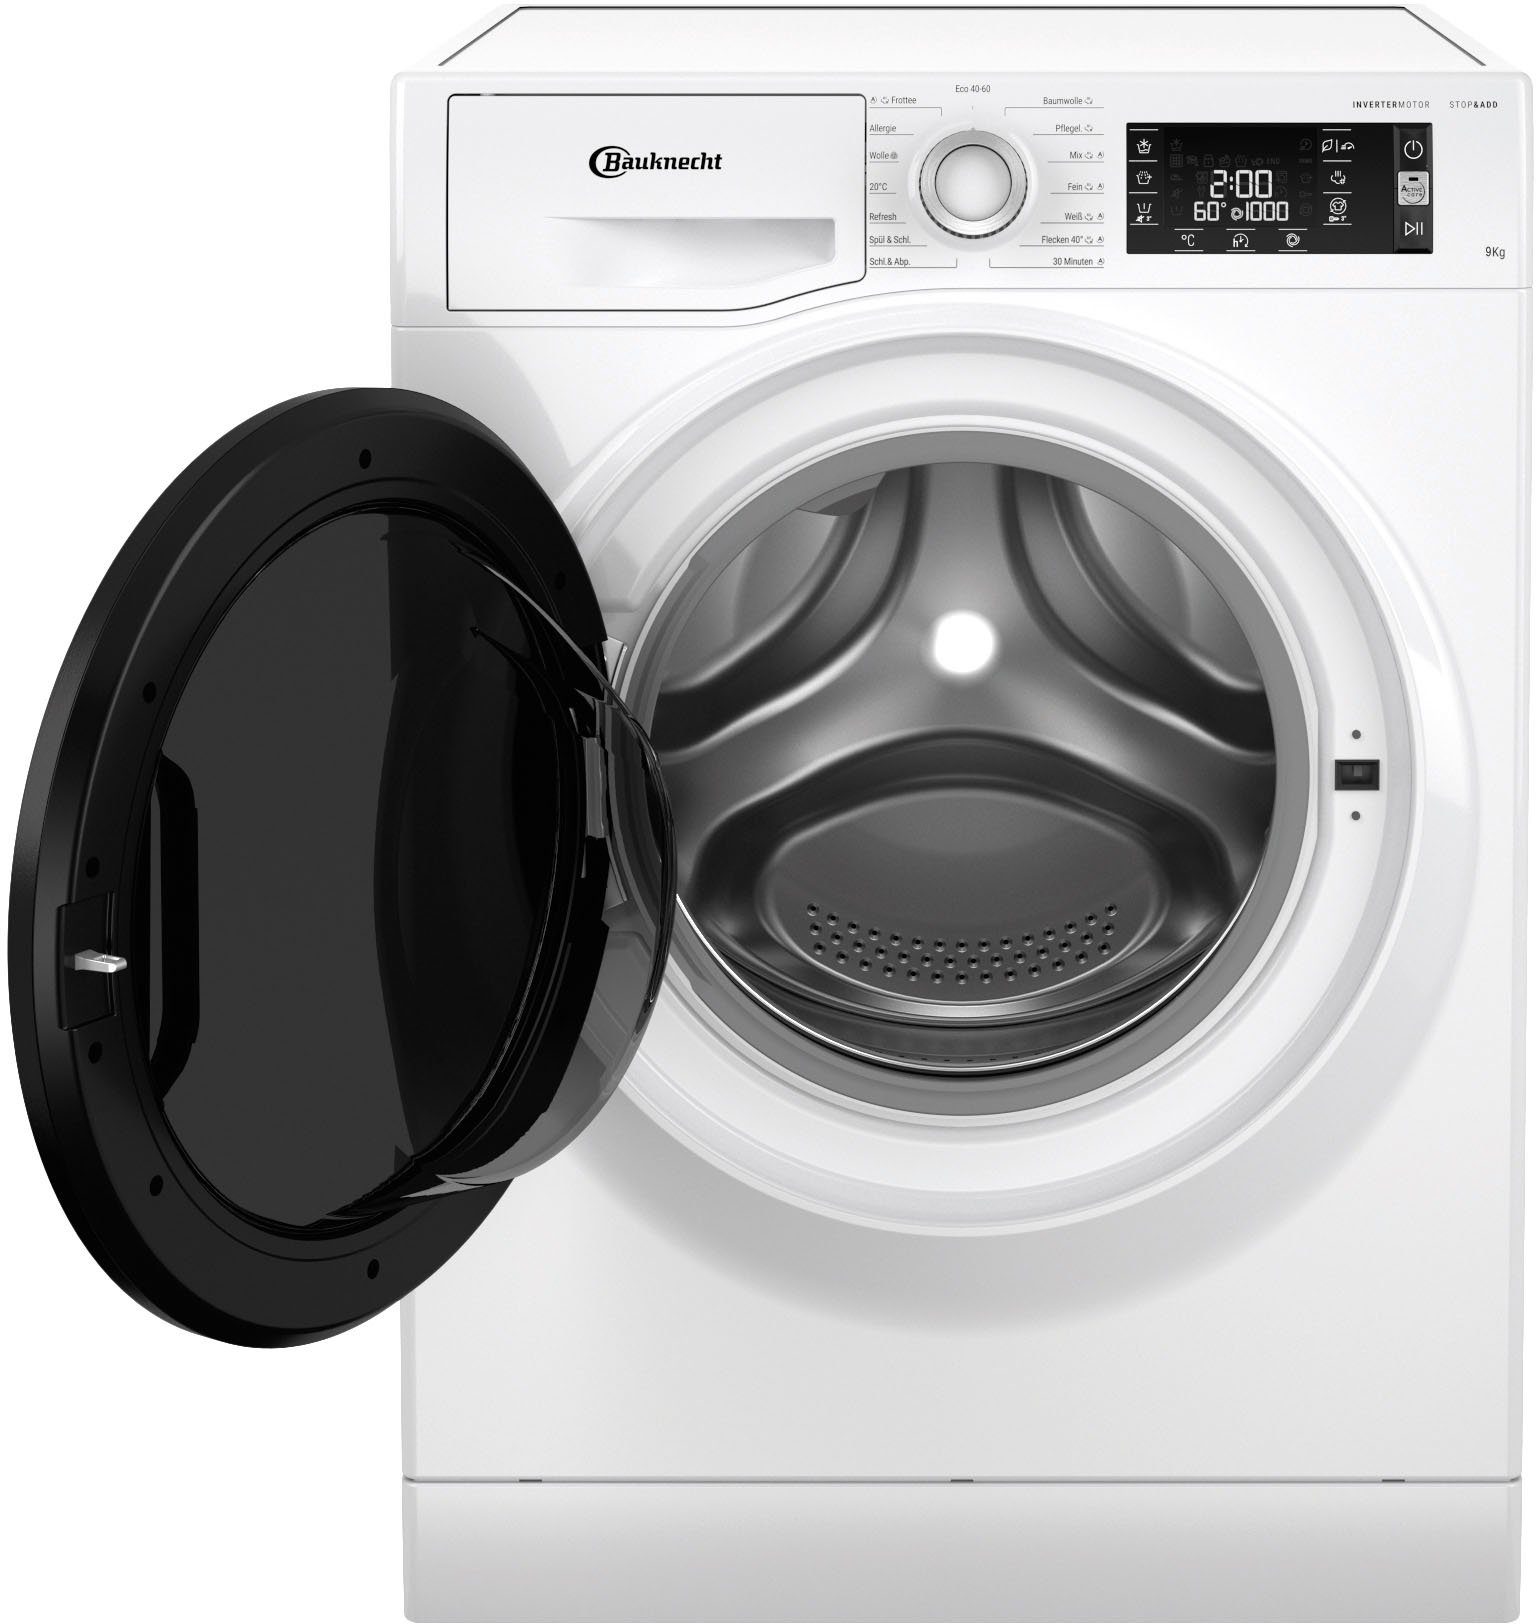 BAUKNECHT Waschmaschine WM Elite 923 PS, 9 kg, 1400 U/min